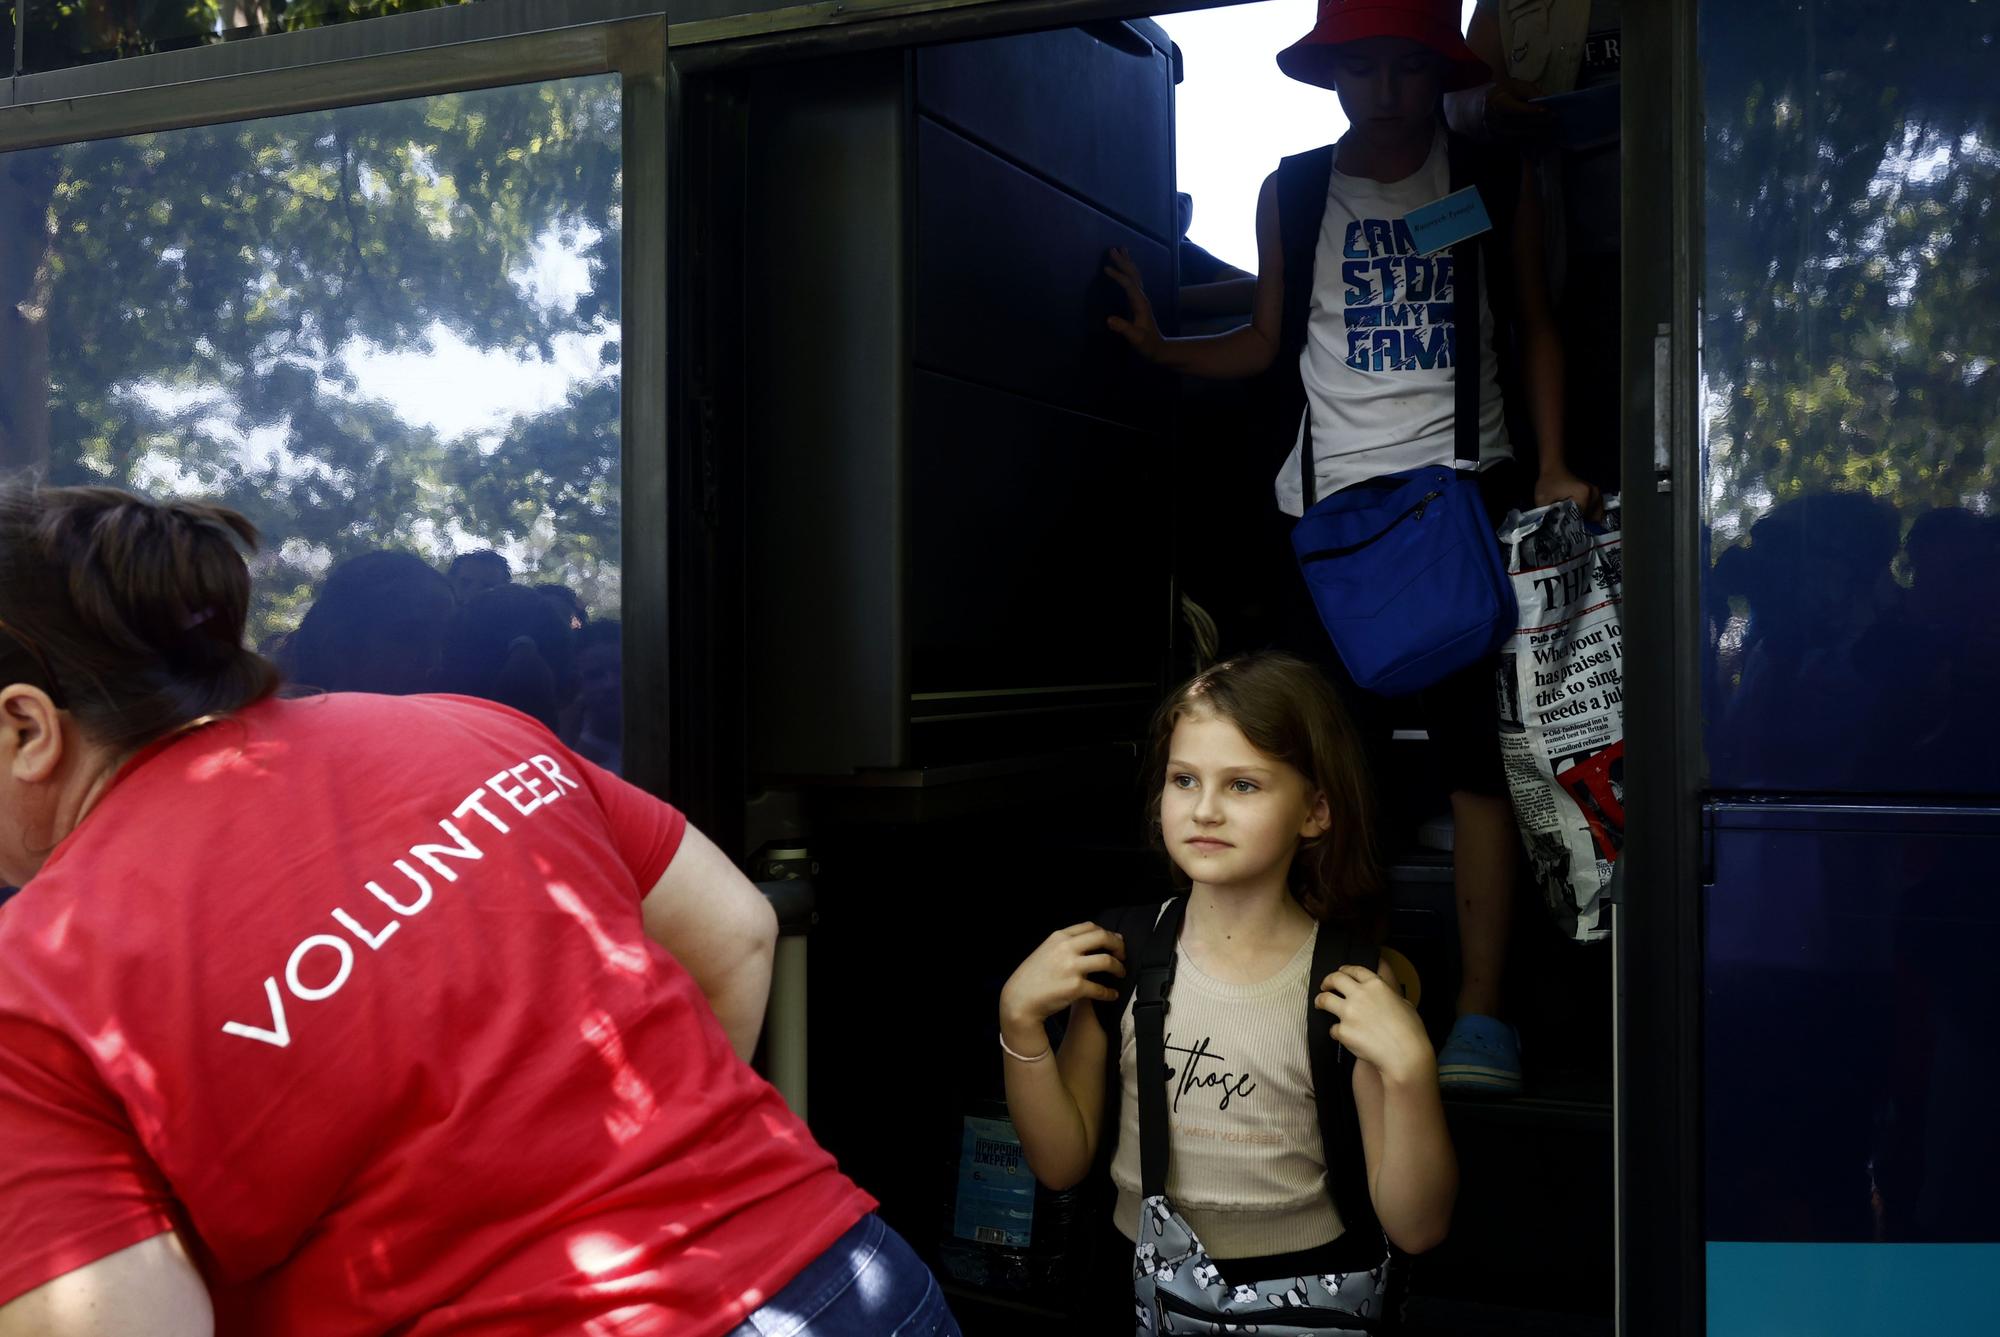 53 niños ucranianos llegan para pasar el verano en familias de acogida